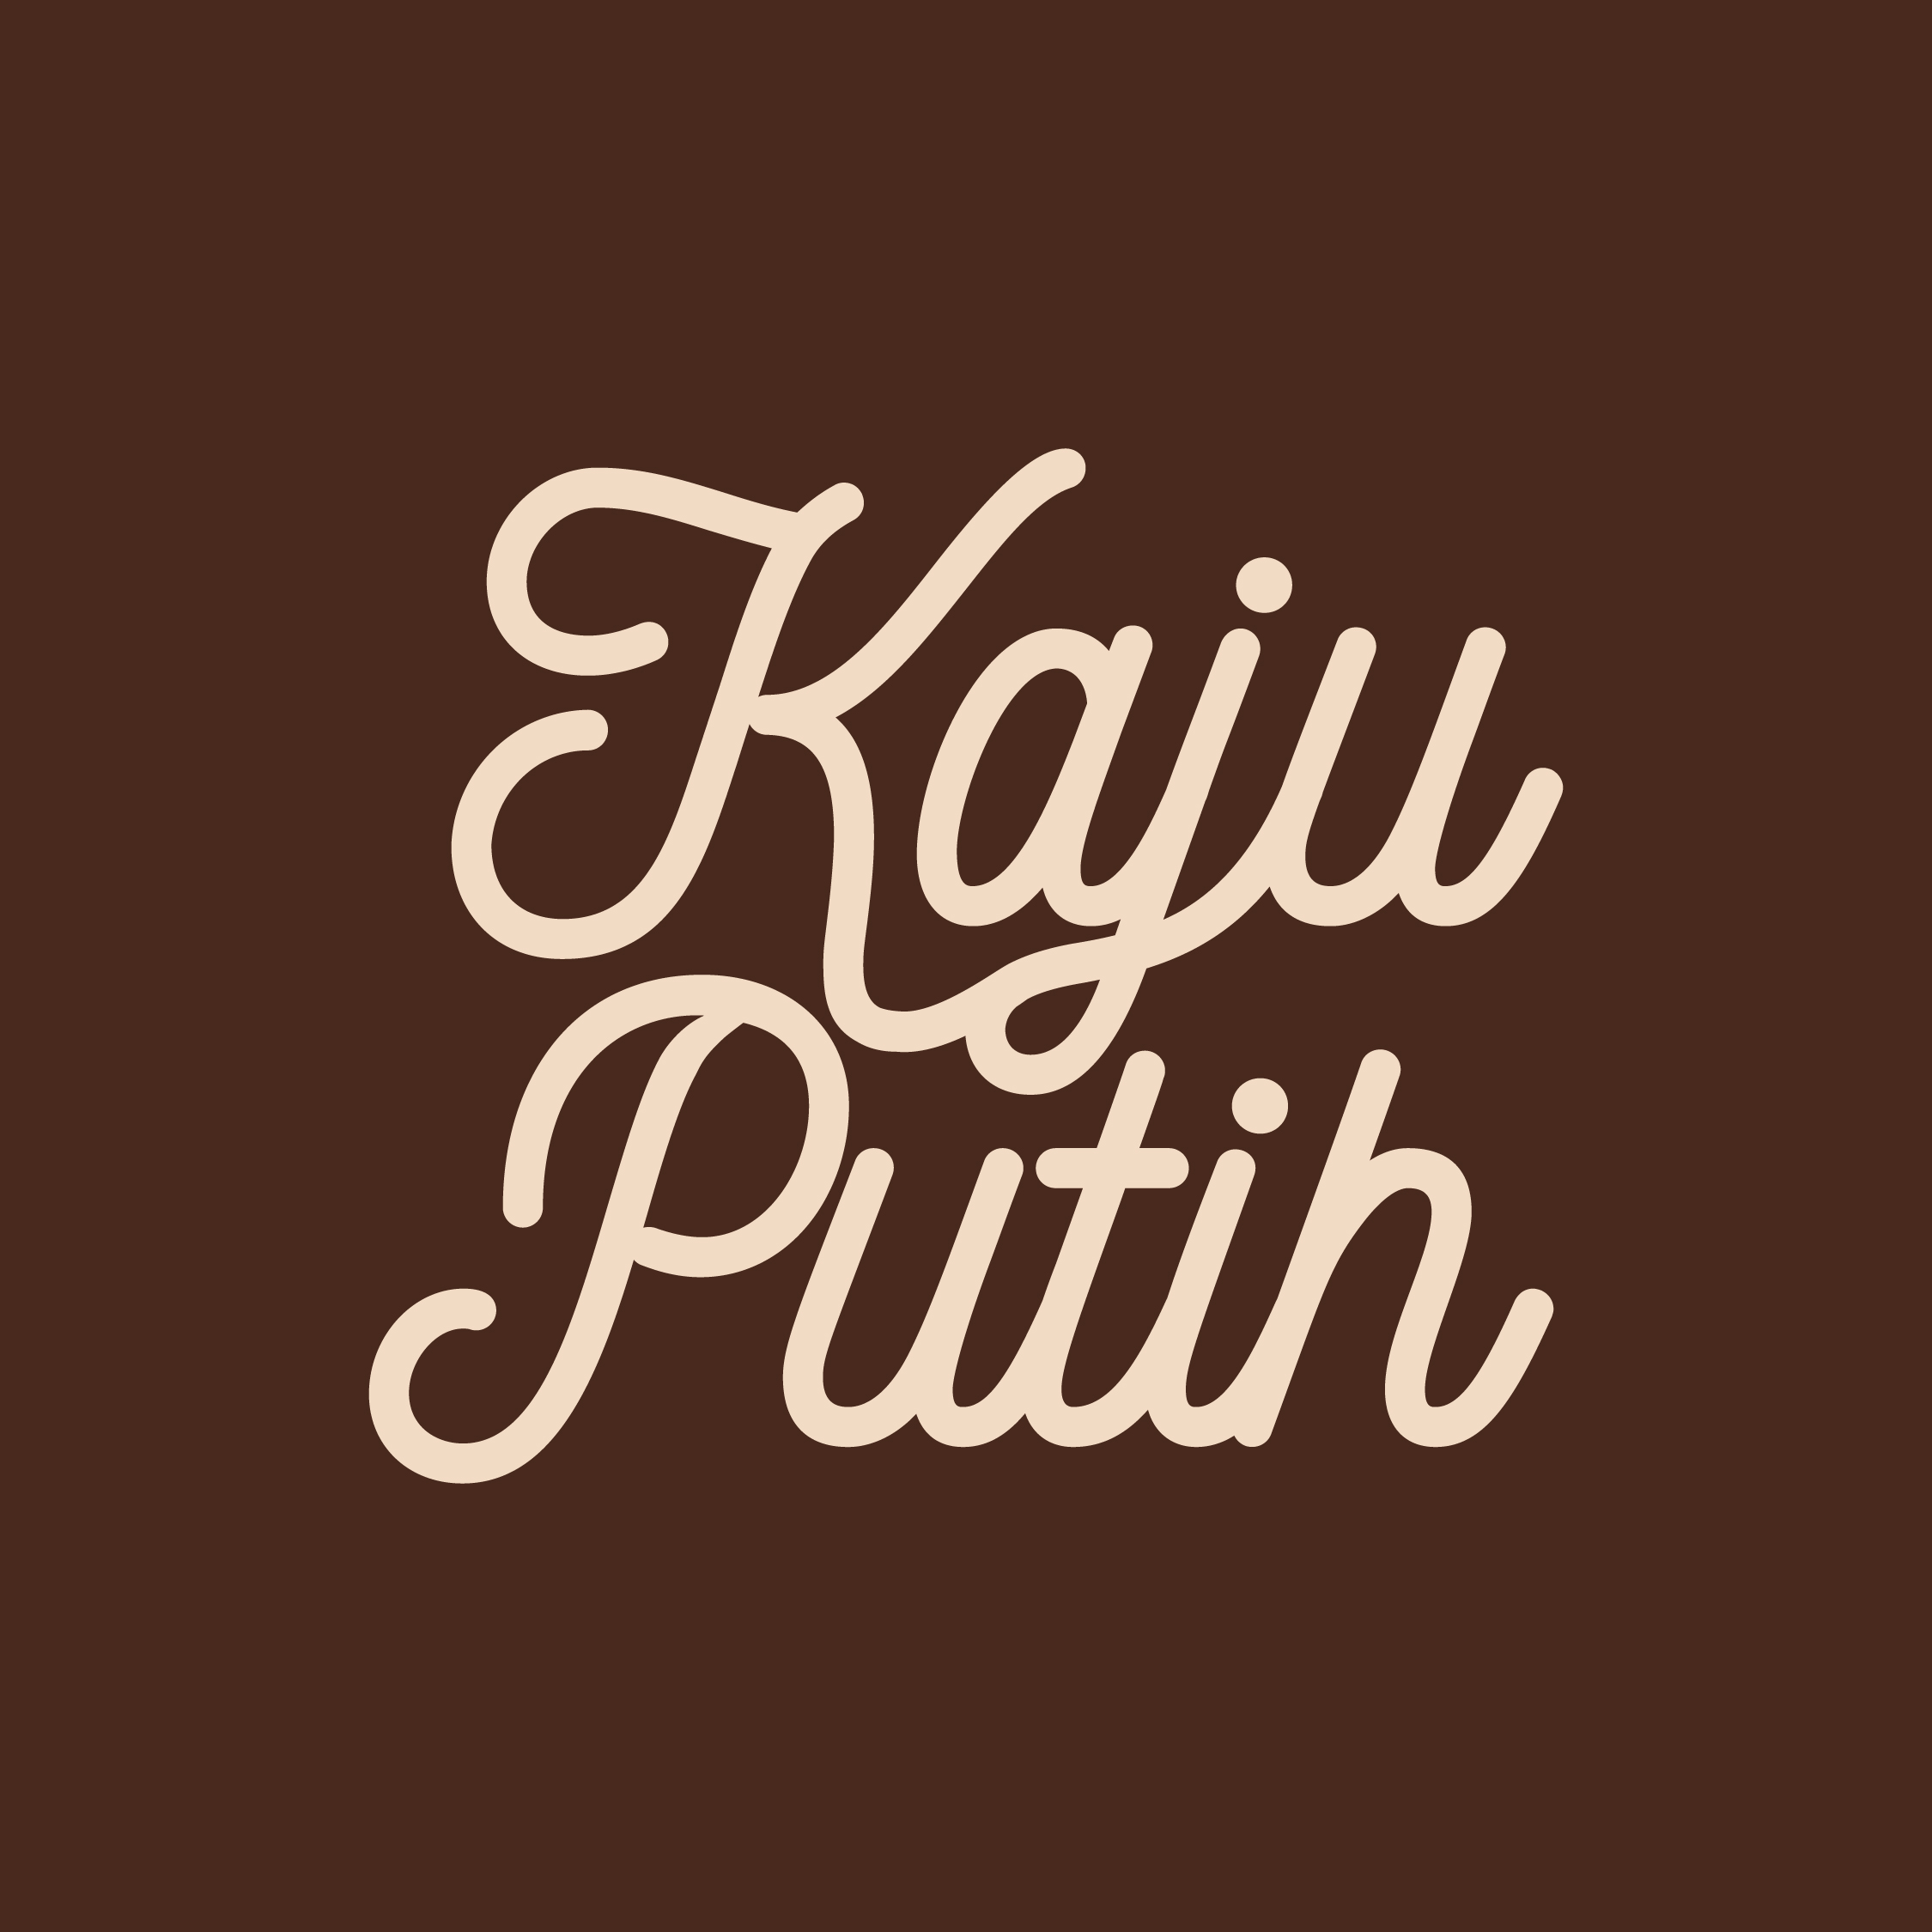 Concept huisstijl voor de stichting Kaju Putih